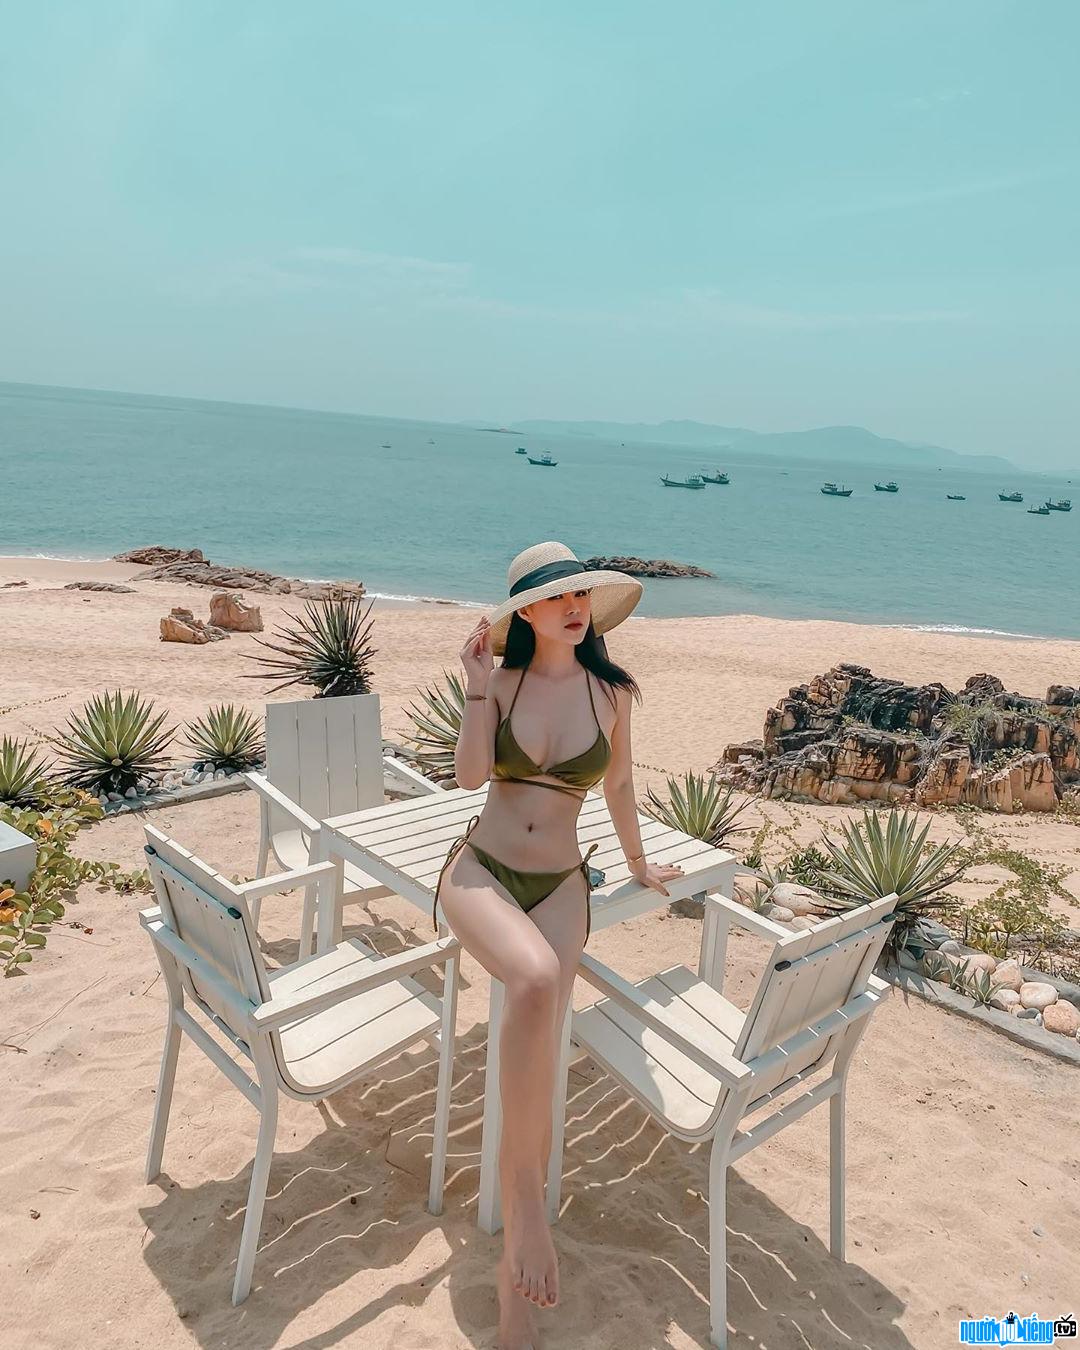 Nguyễn Thảo khoe dáng nuột nà với bikini